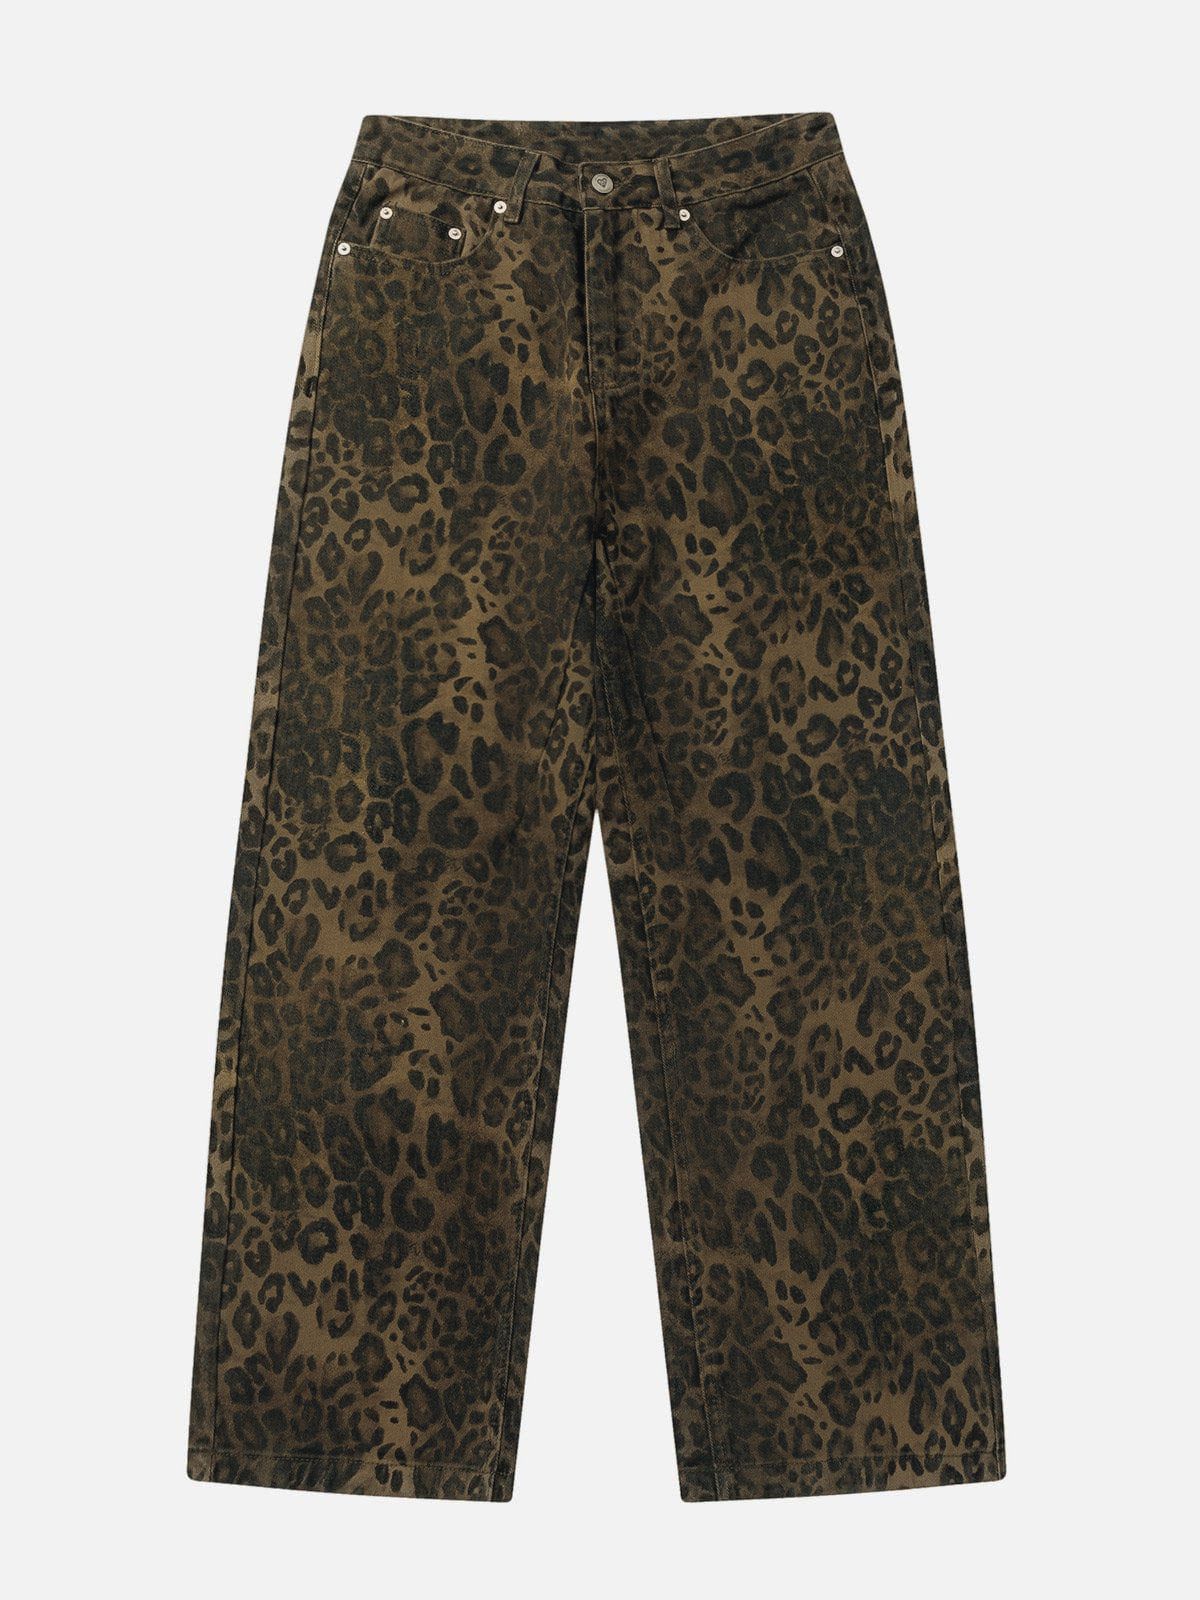 Aelfric Eden Leopard Print Jeans<font color=